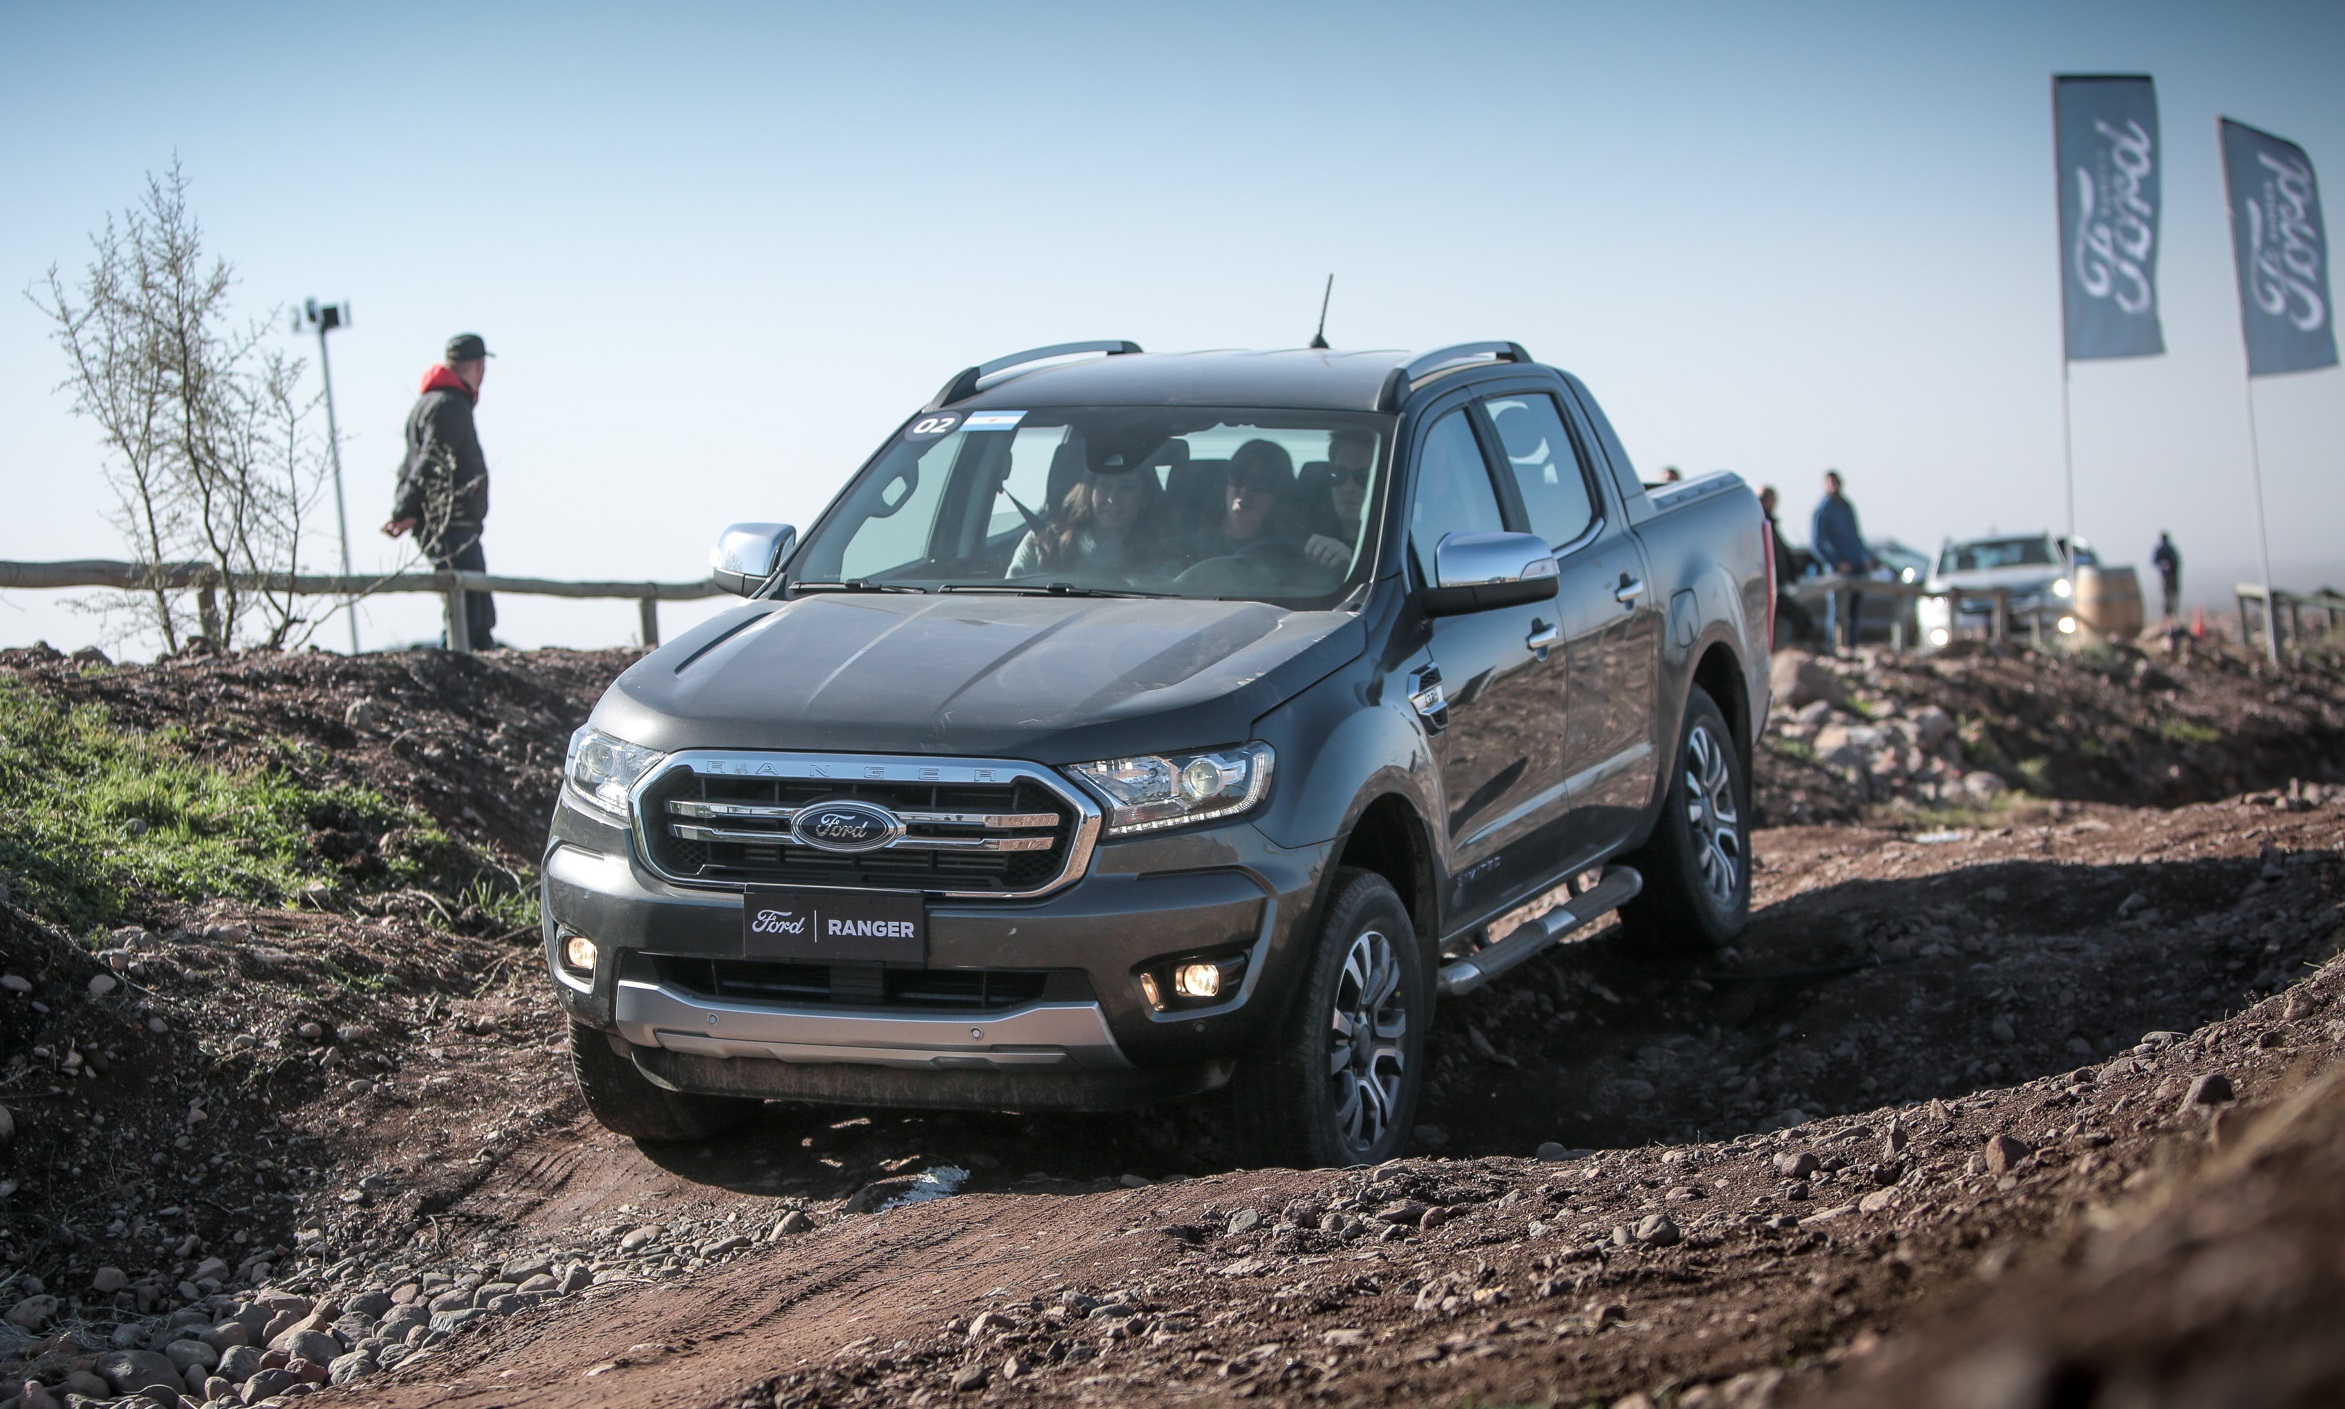 Ford presentó la Nueva Ranger en Mendoza, ¡ahí estuvimos!